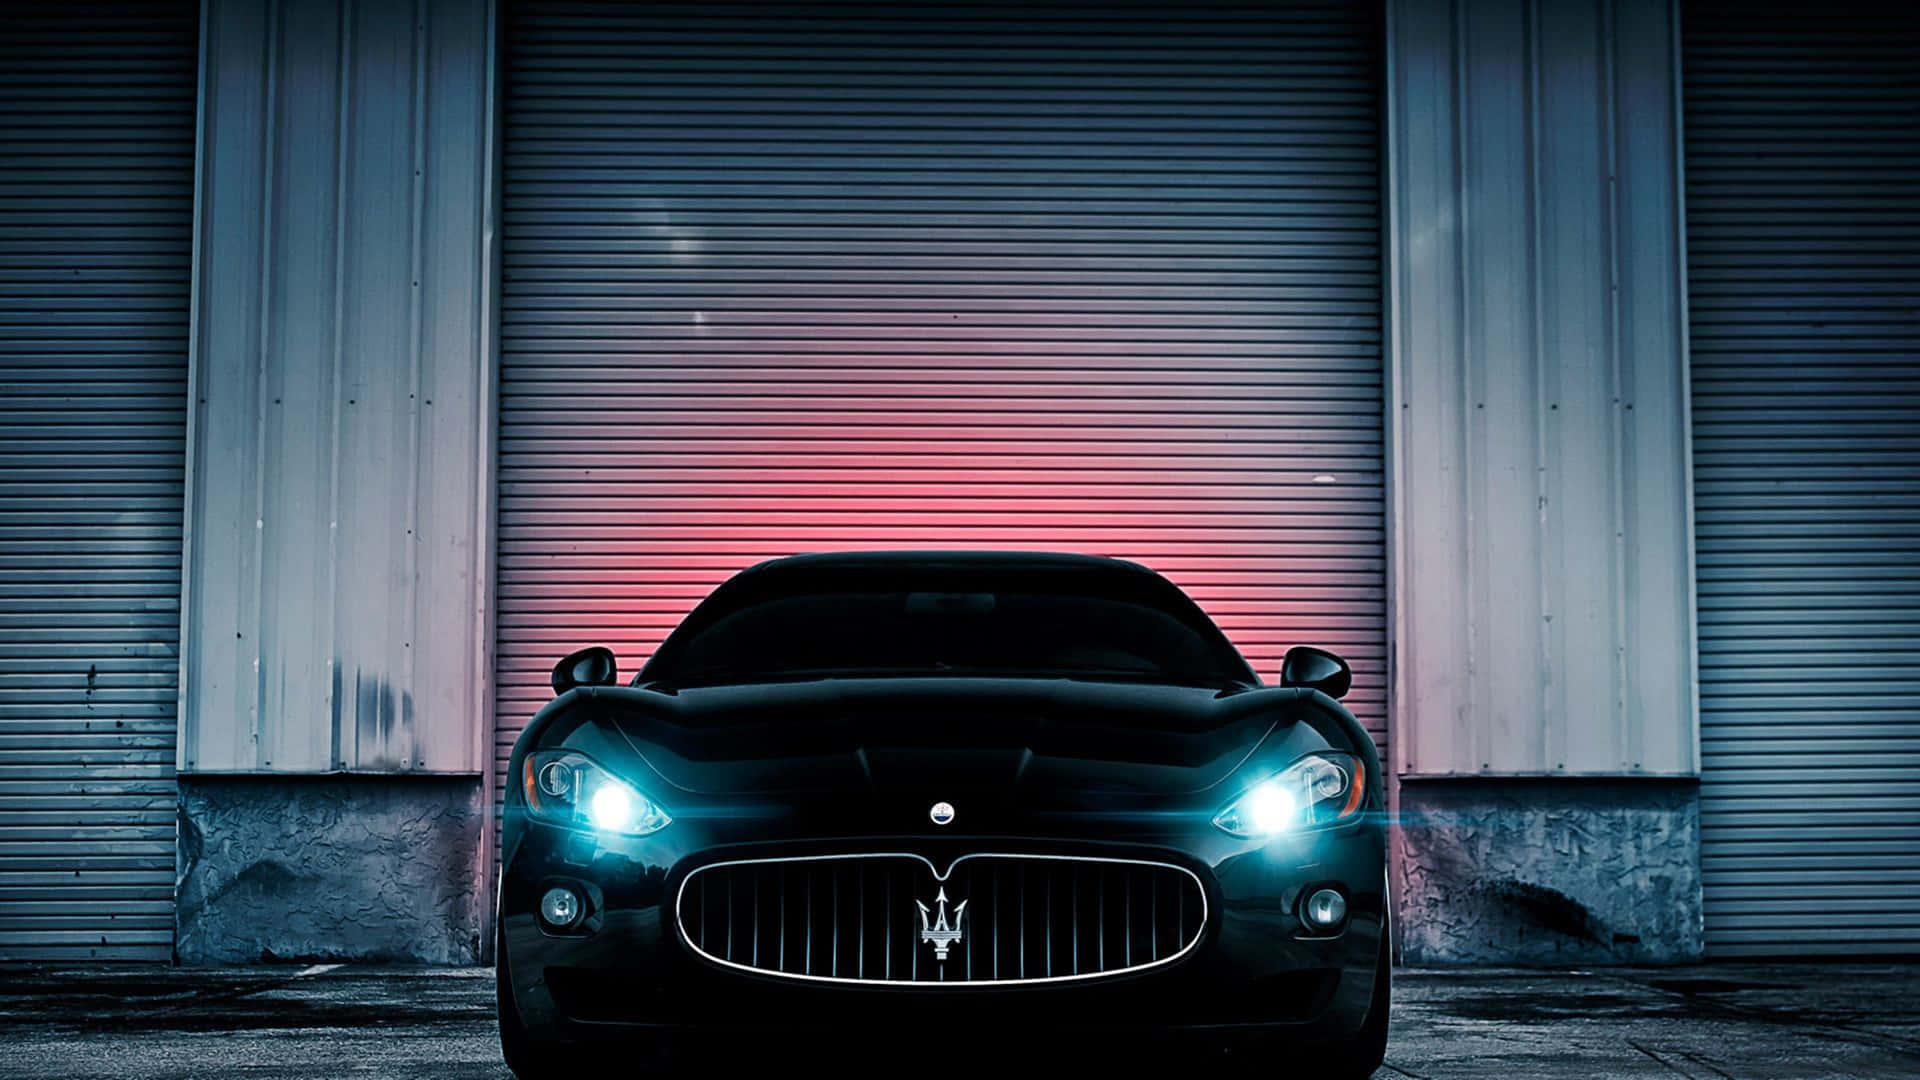 Einschwarzer Maserati Parkte Vor Einer Garage. Wallpaper